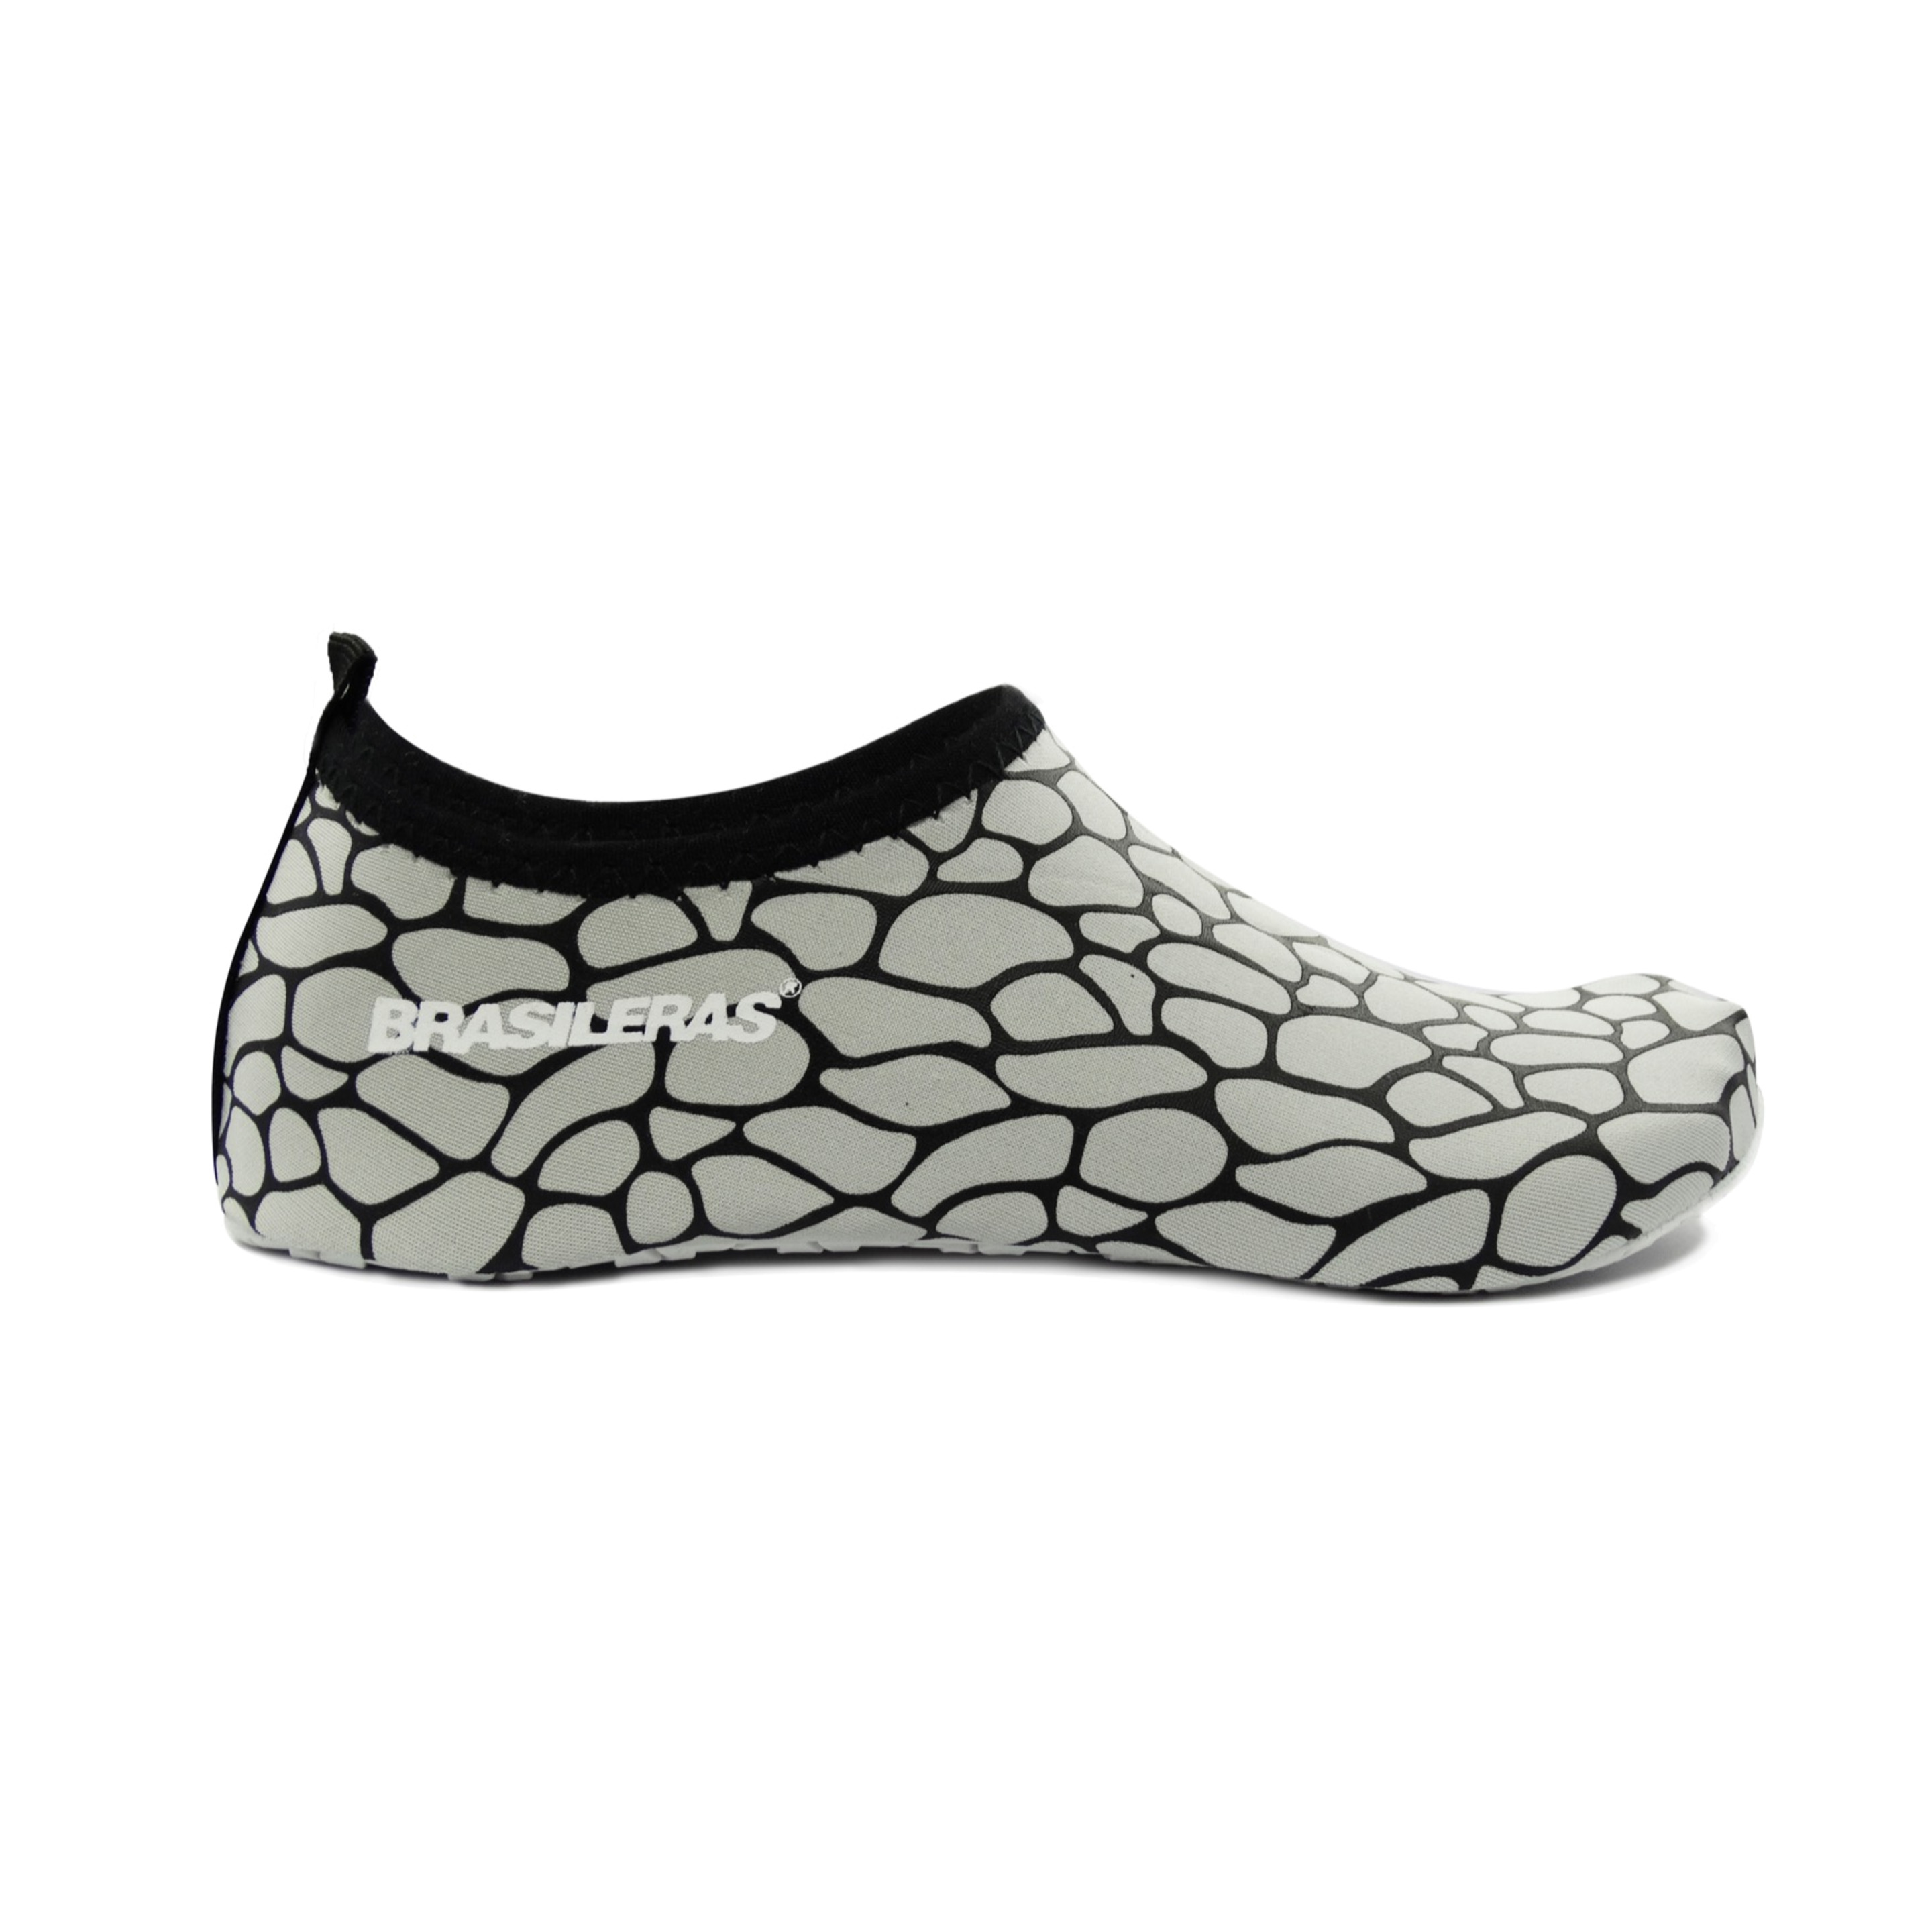 Zapato De Agua Brasileras,brasocks Stones - blanco - 